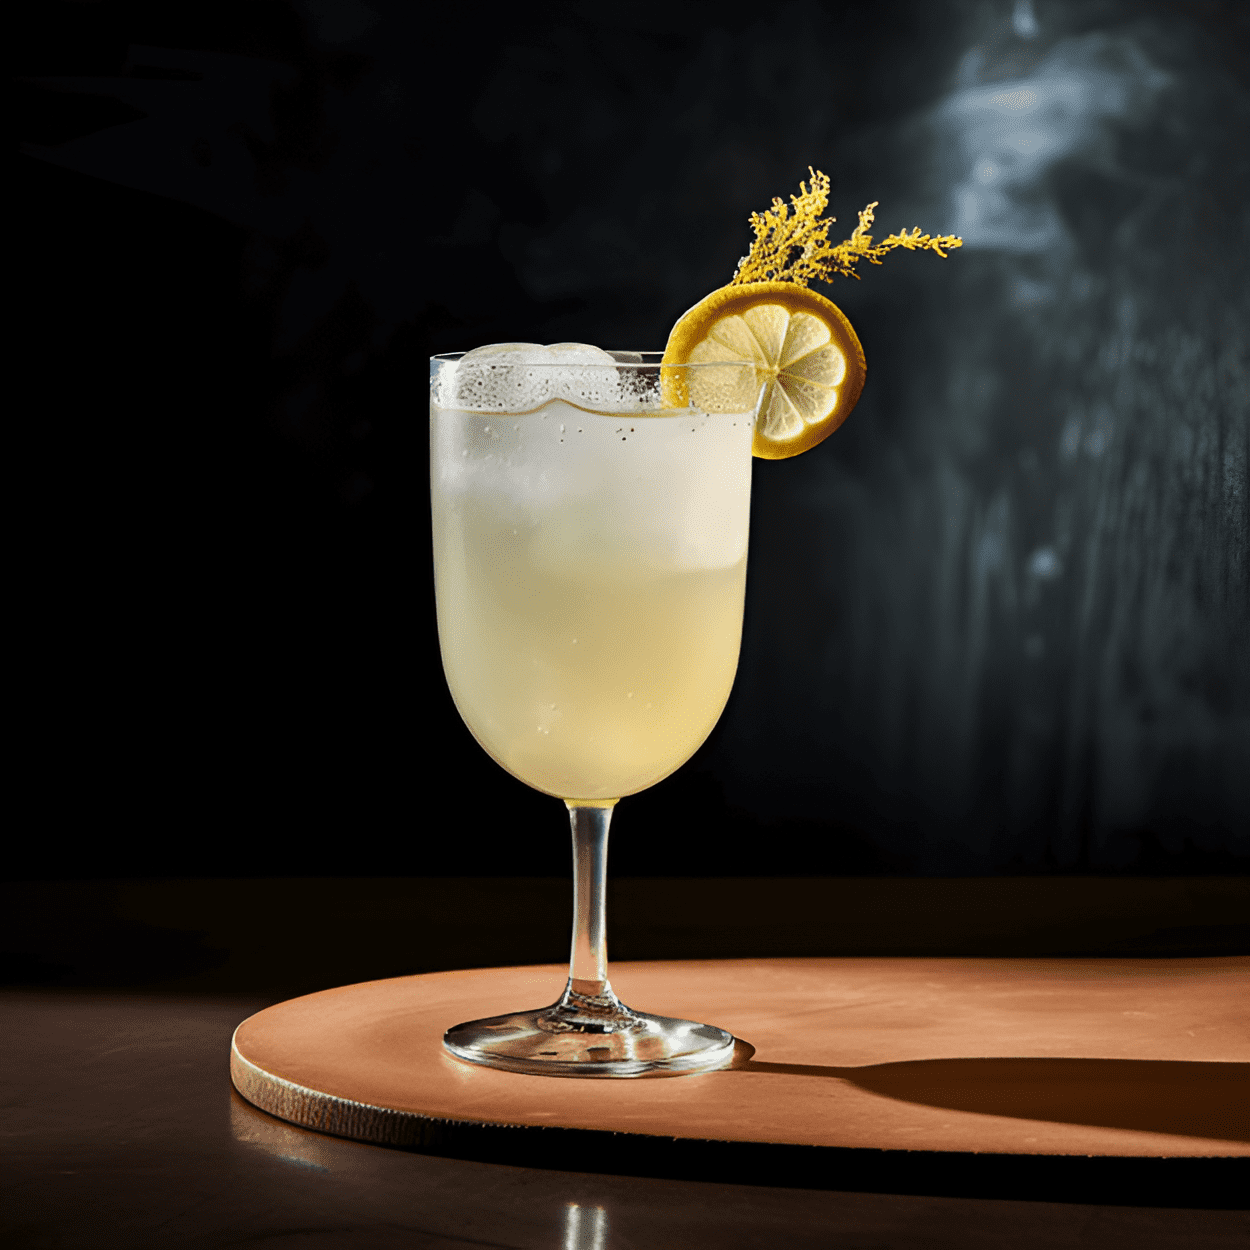 Gin Blossom Cóctel Receta - El Gin Blossom es un cóctel refrescante, ligero y ligeramente dulce. Las notas florales del licor de flor de saúco se mezclan armoniosamente con los botánicos del gin, mientras que el agua tónica añade un toque de amargura. El jugo de limón aporta una sutileza agria que equilibra la dulzura.